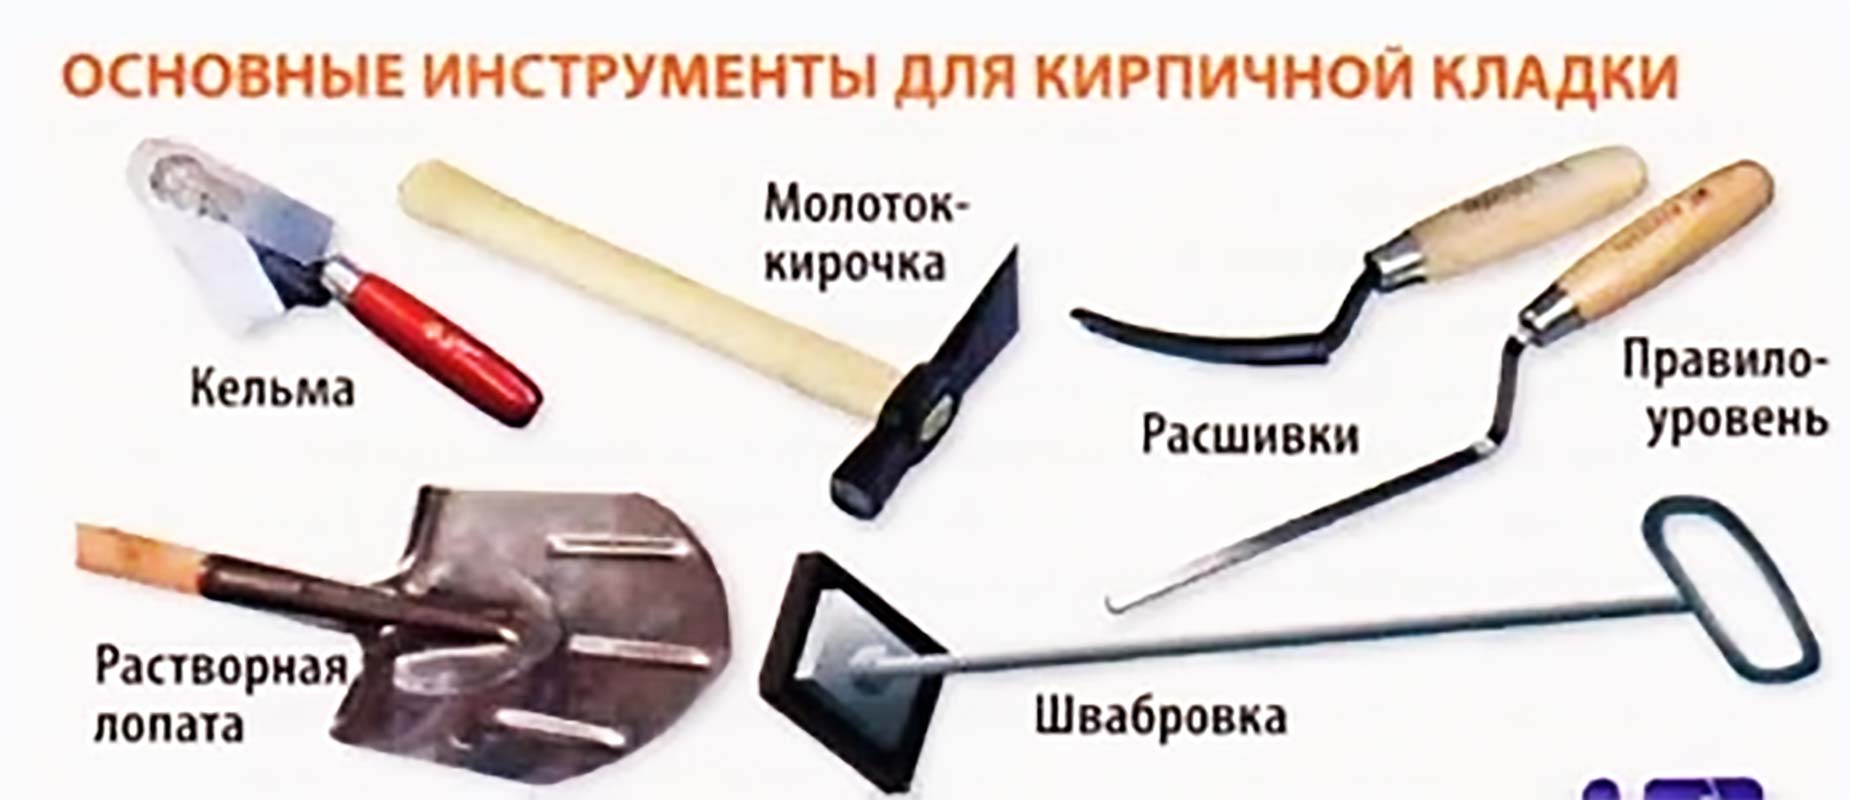 Основные инструменты каменщика